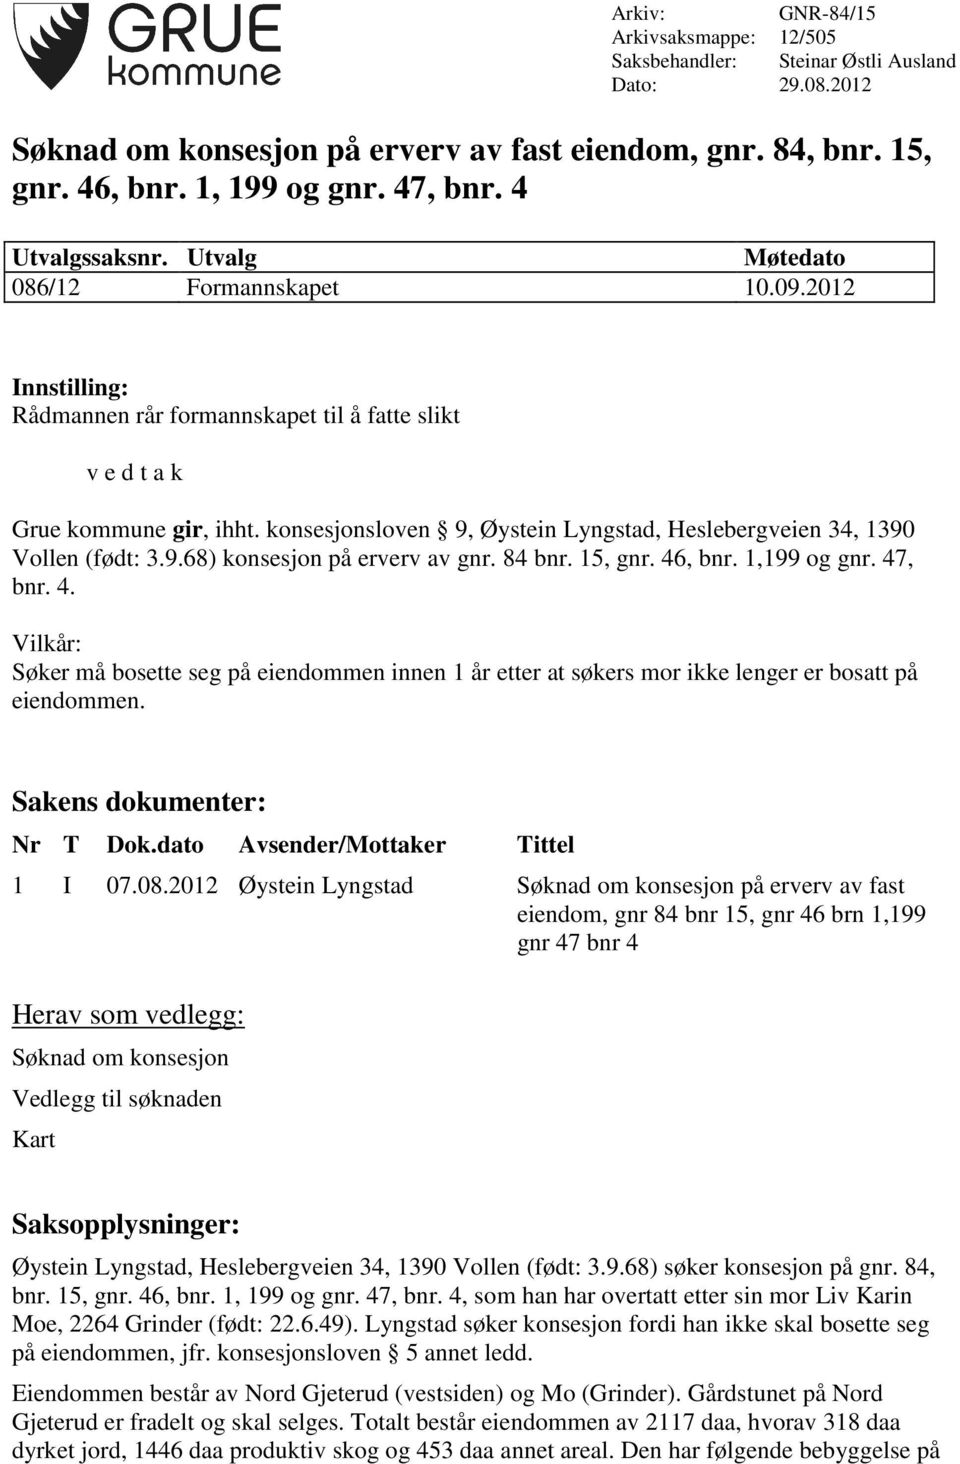 konsesjonsloven 9, Øystein Lyngstad, Heslebergveien 34, 1390 Vollen (født: 3.9.68) konsesjon på erverv av gnr. 84 bnr. 15, gnr. 46